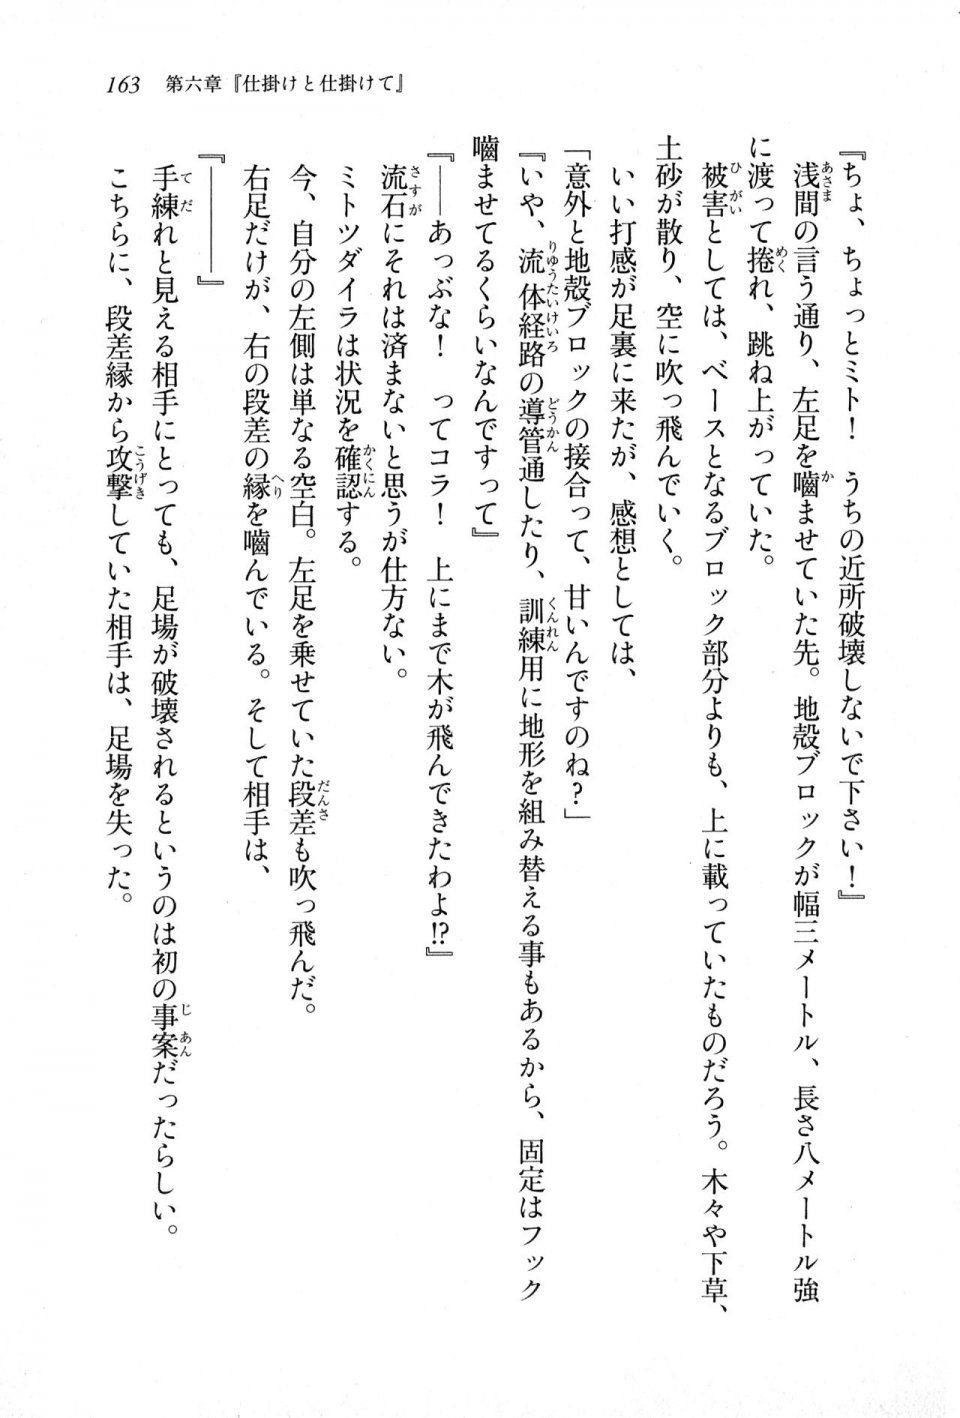 Kyoukai Senjou no Horizon LN Sidestory Vol 1 - Photo #161